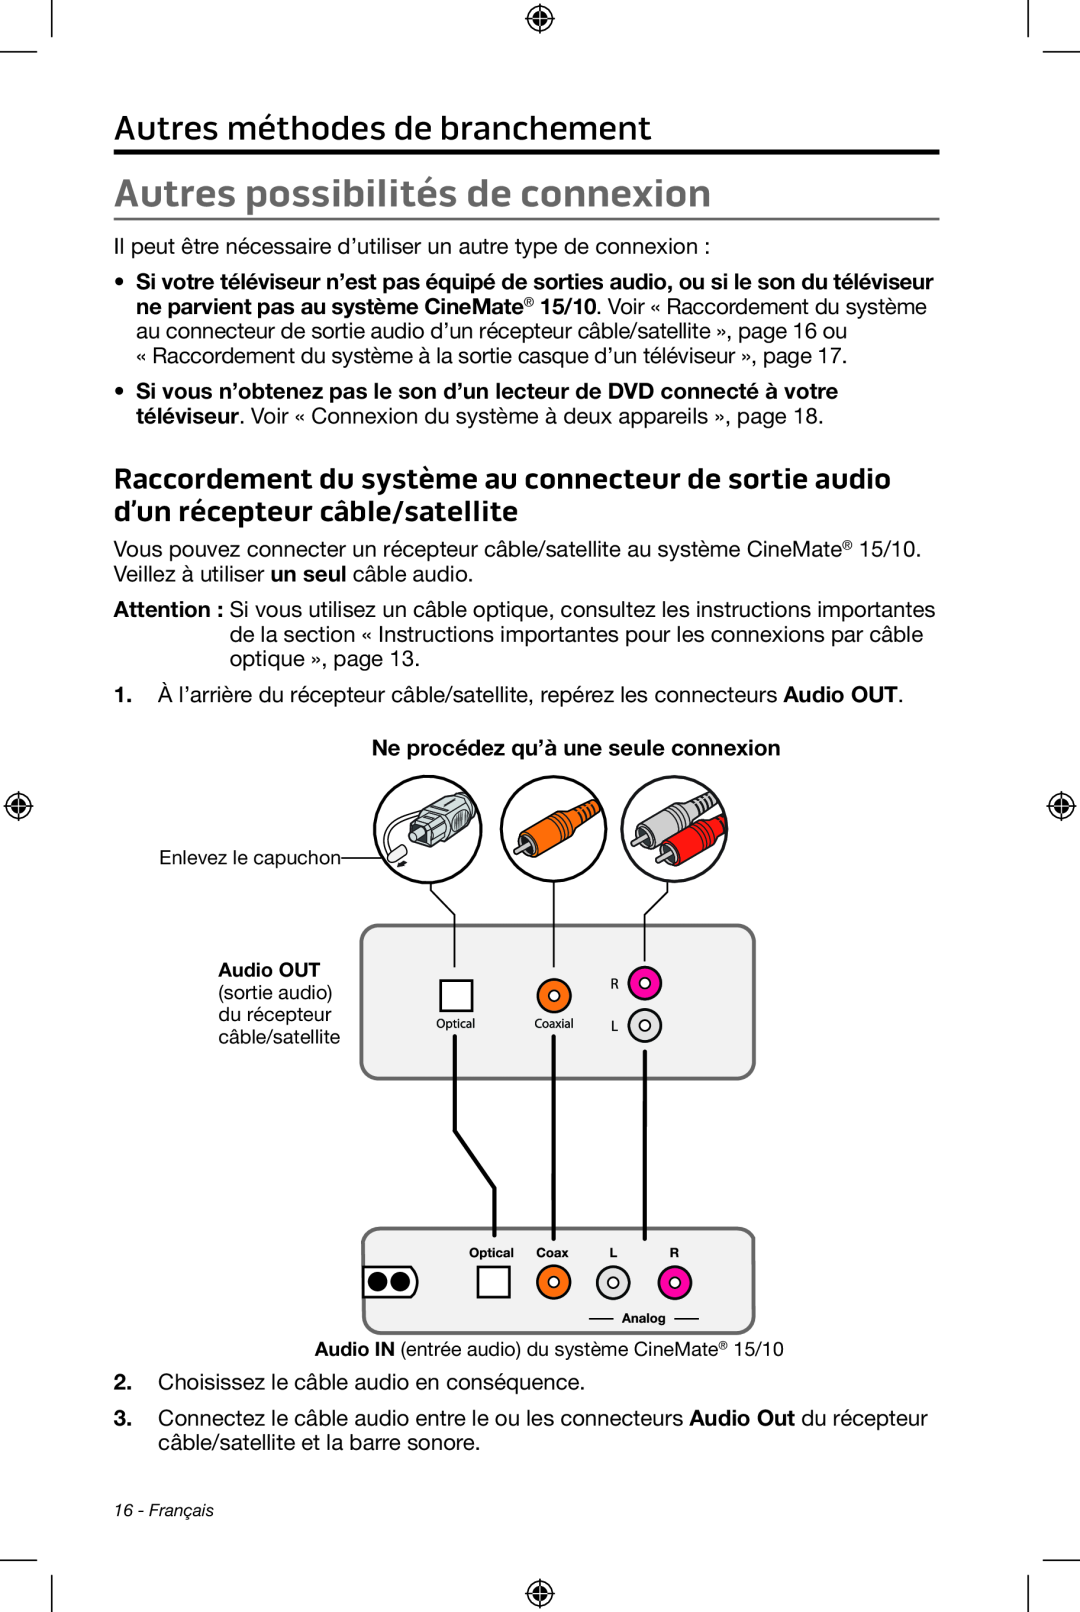 Bose CineMate 15/10 manual Autres possibilités de connexion, Autres méthodes de branchement 